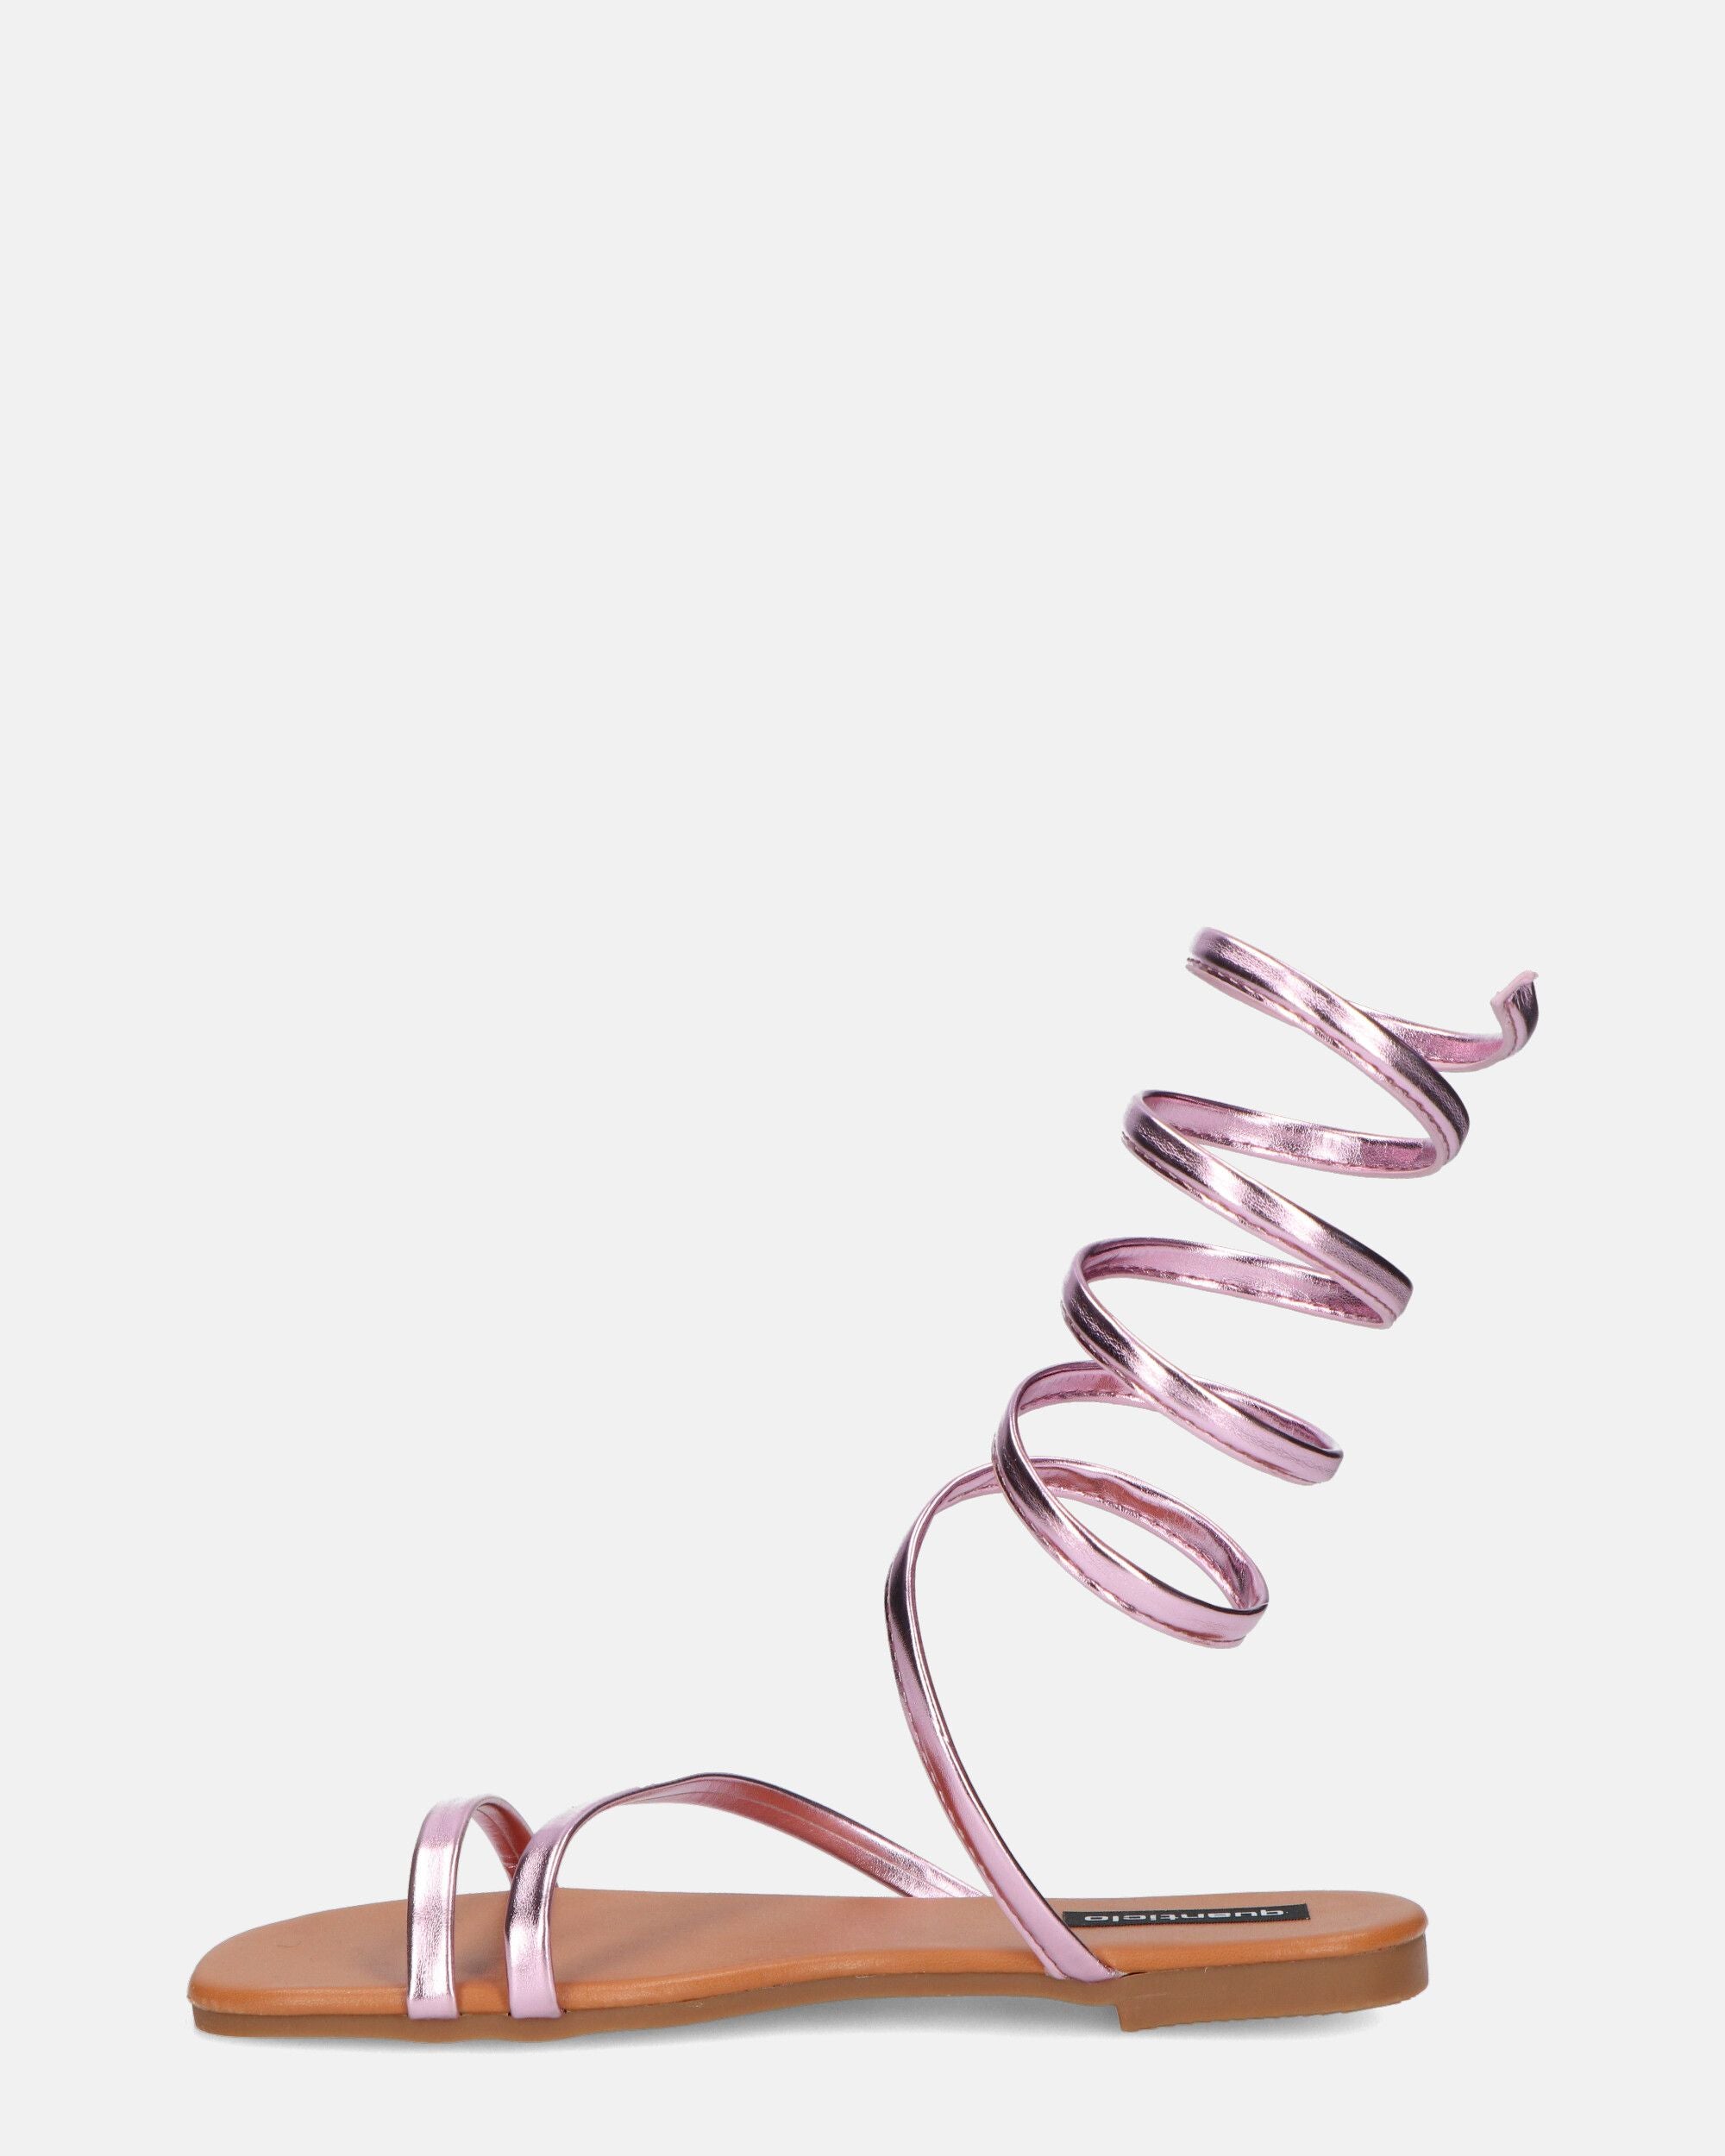 SIENNA - sandali con suola rosa e spirale rosa